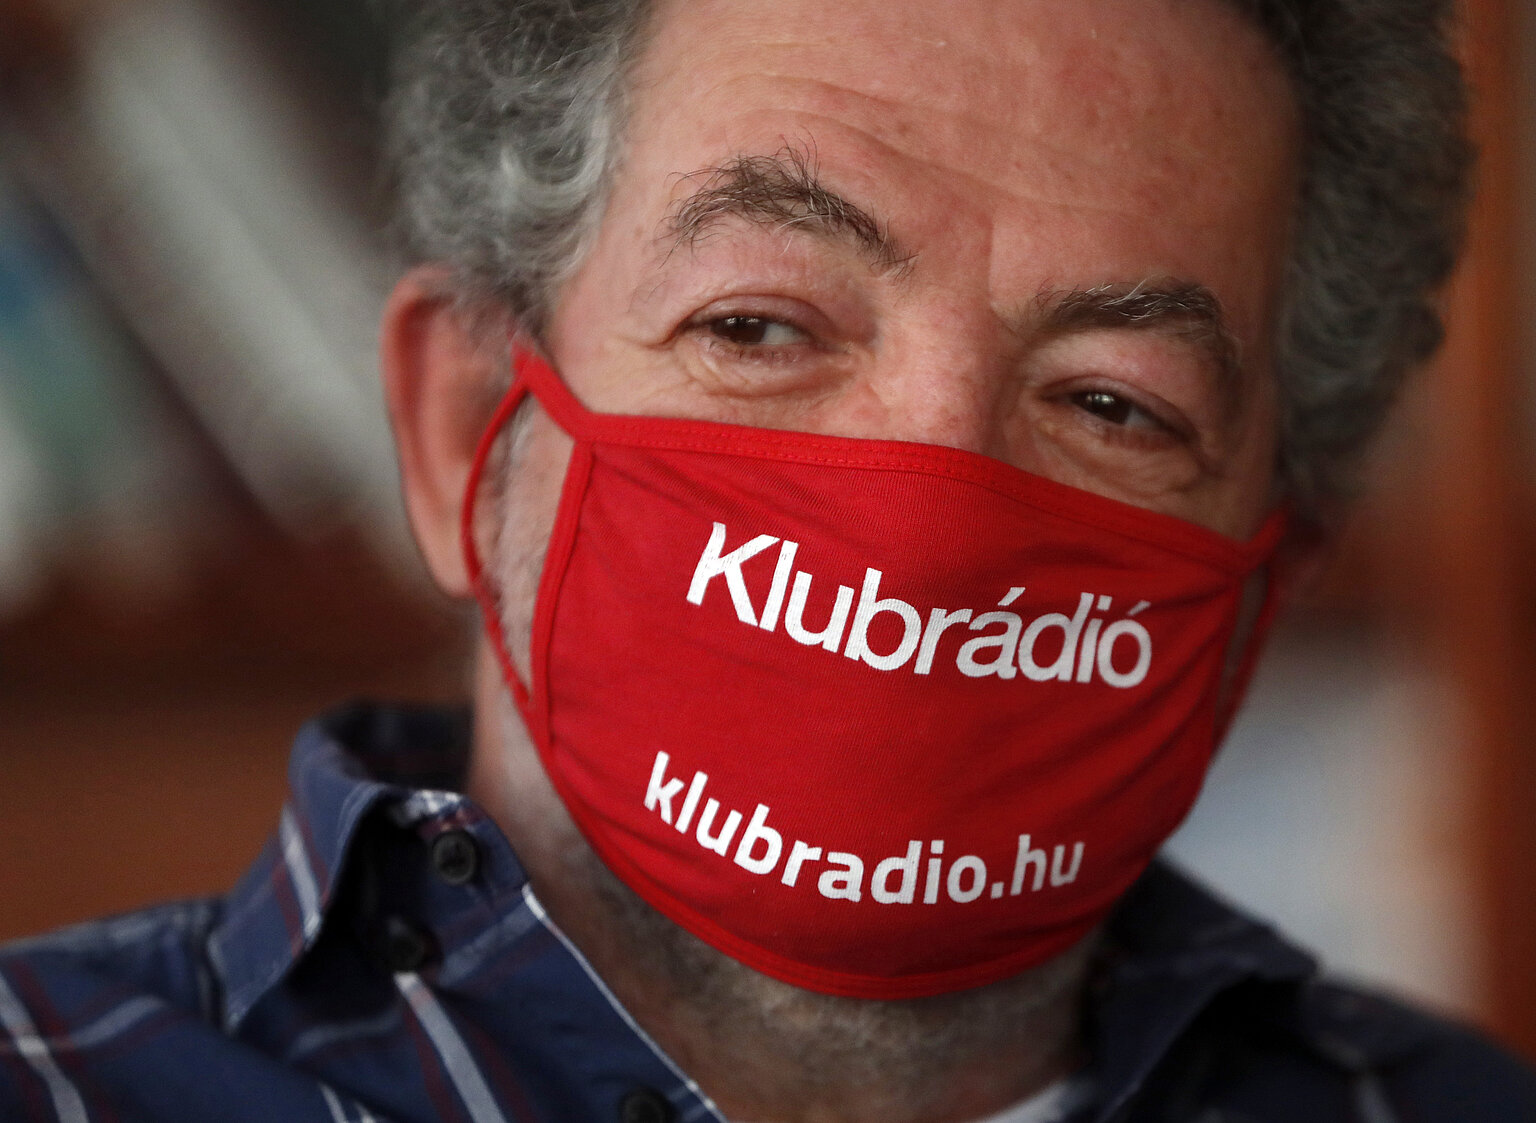  – "Aus meiner Sicht ist der gesamte Ablauf ebenso wie das Medienrecht insgesamt illegal", sagt Klubrádió-Chef András Arató. (Foto: pa/ap: Laszlo Balogh)